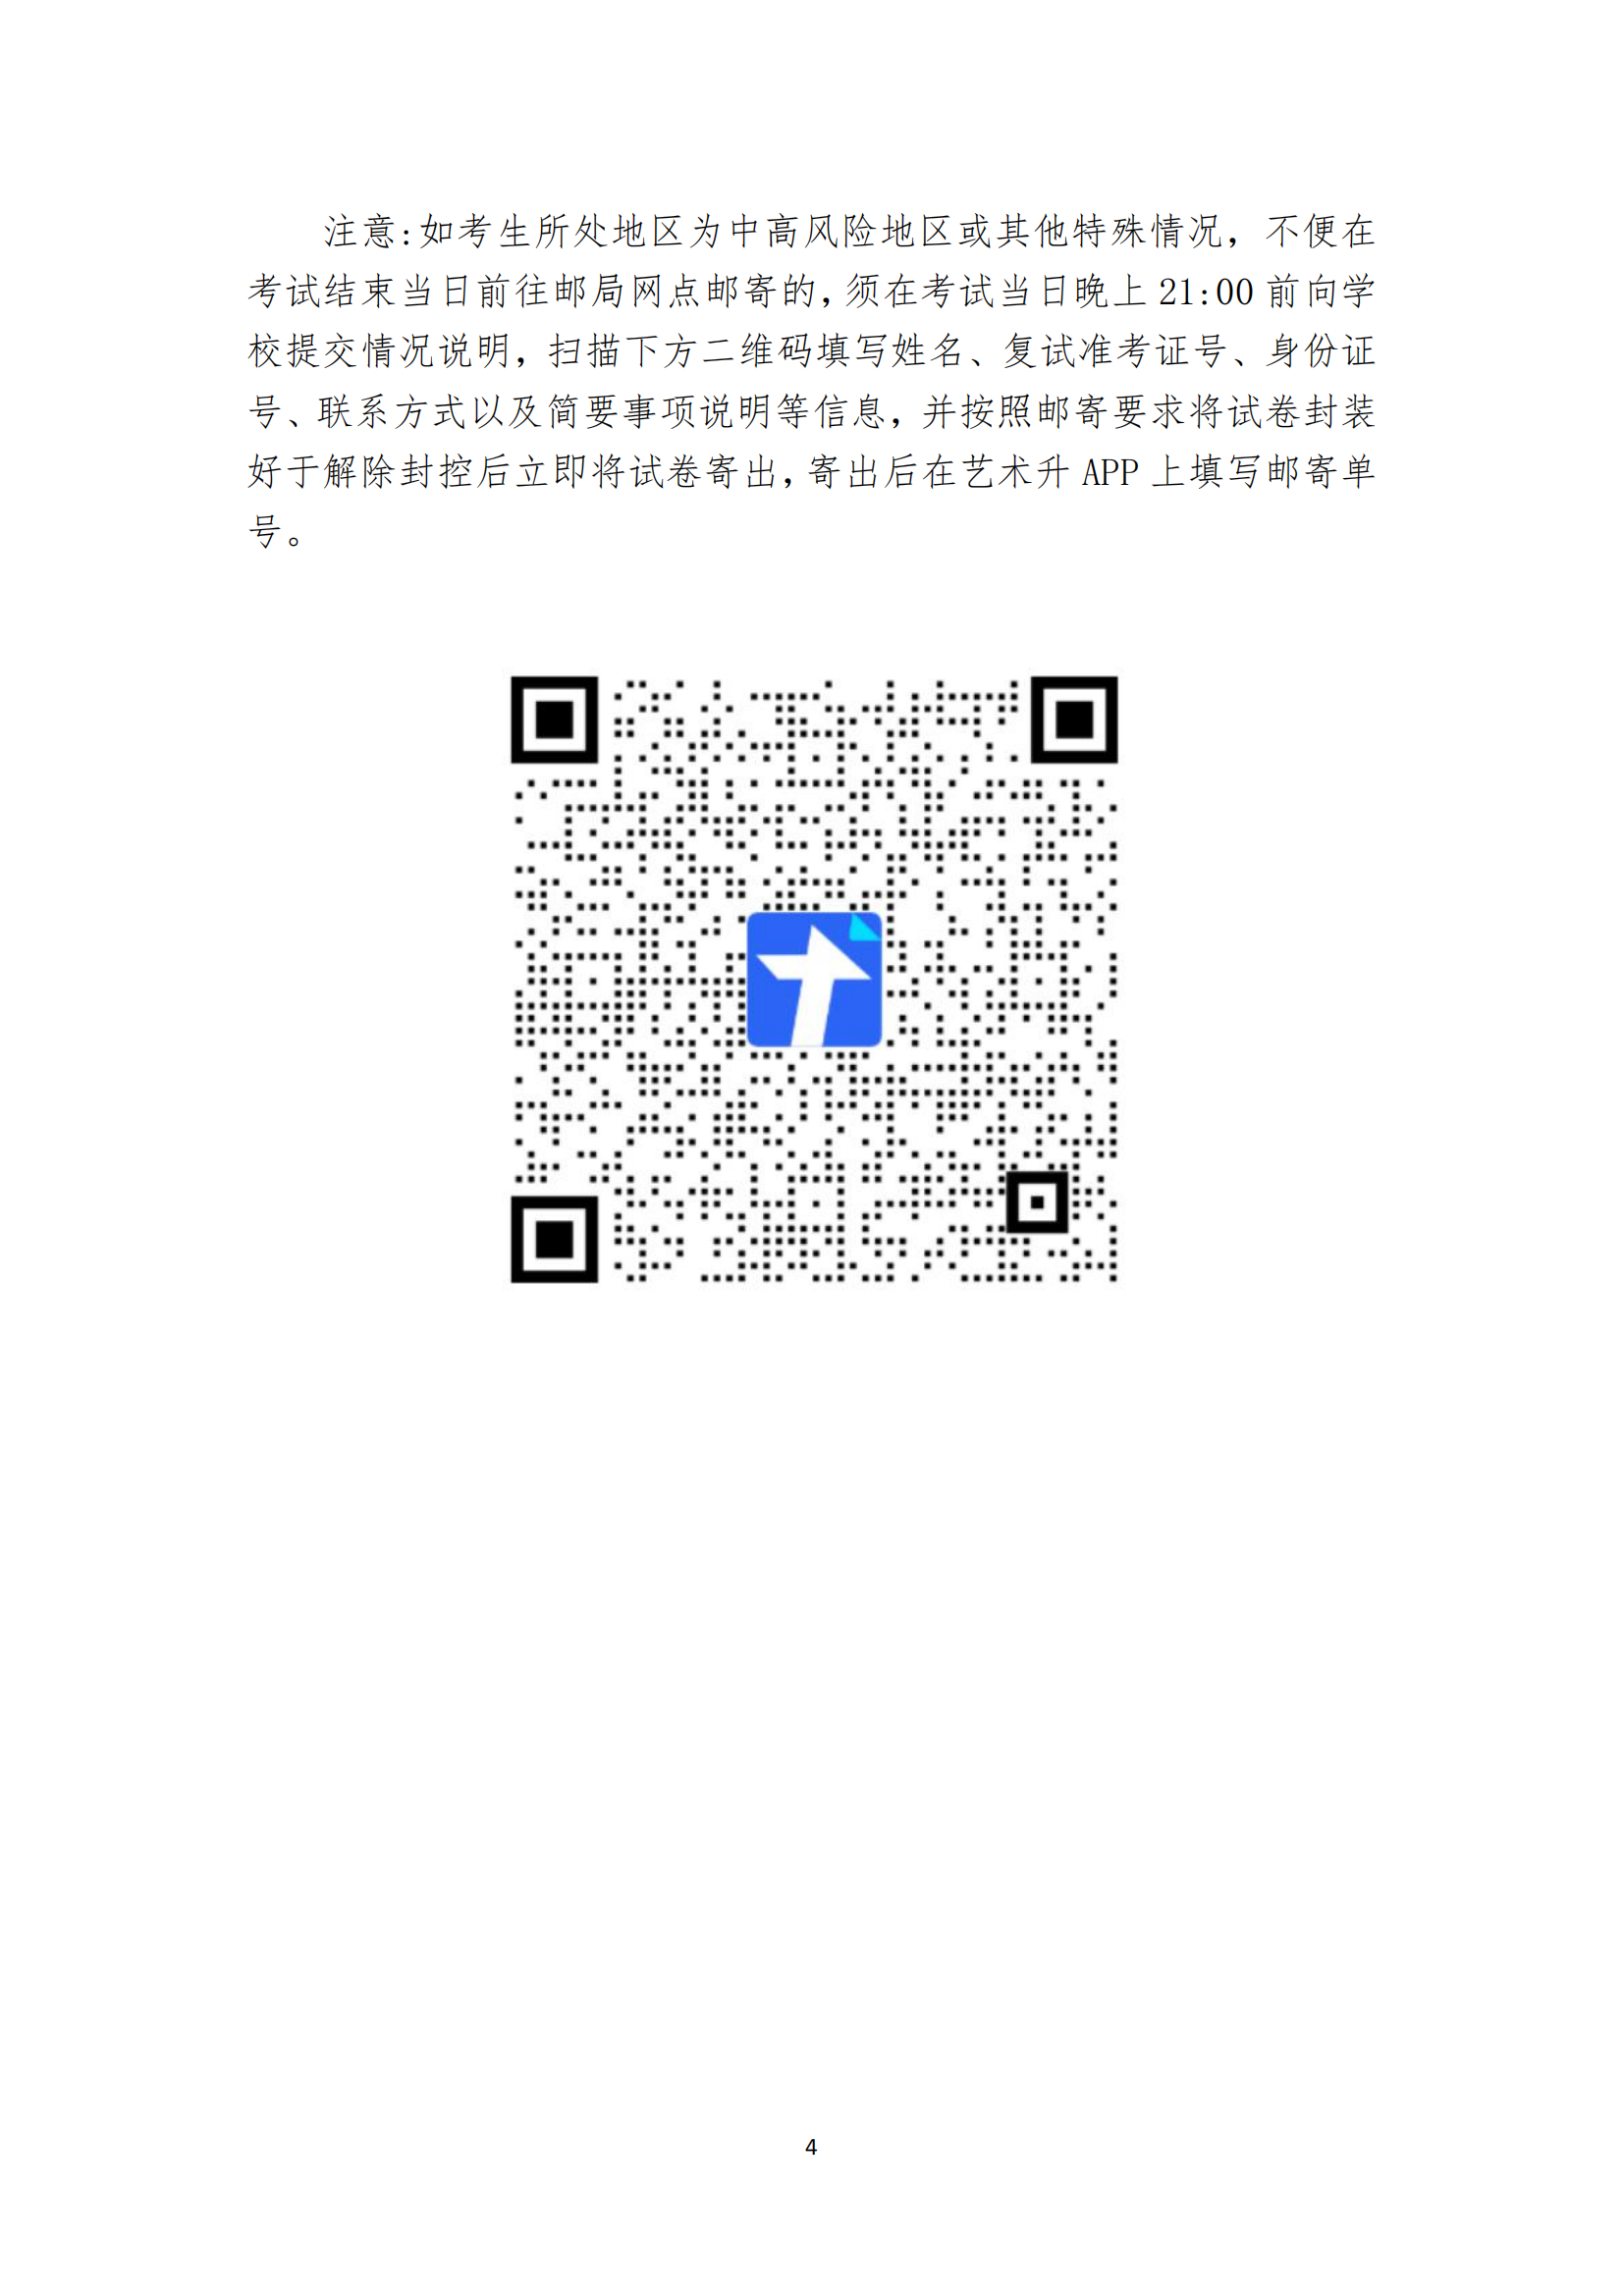 附件3：天津美术学院2022年本科招生线上复试试卷封装及邮寄要求_03.png